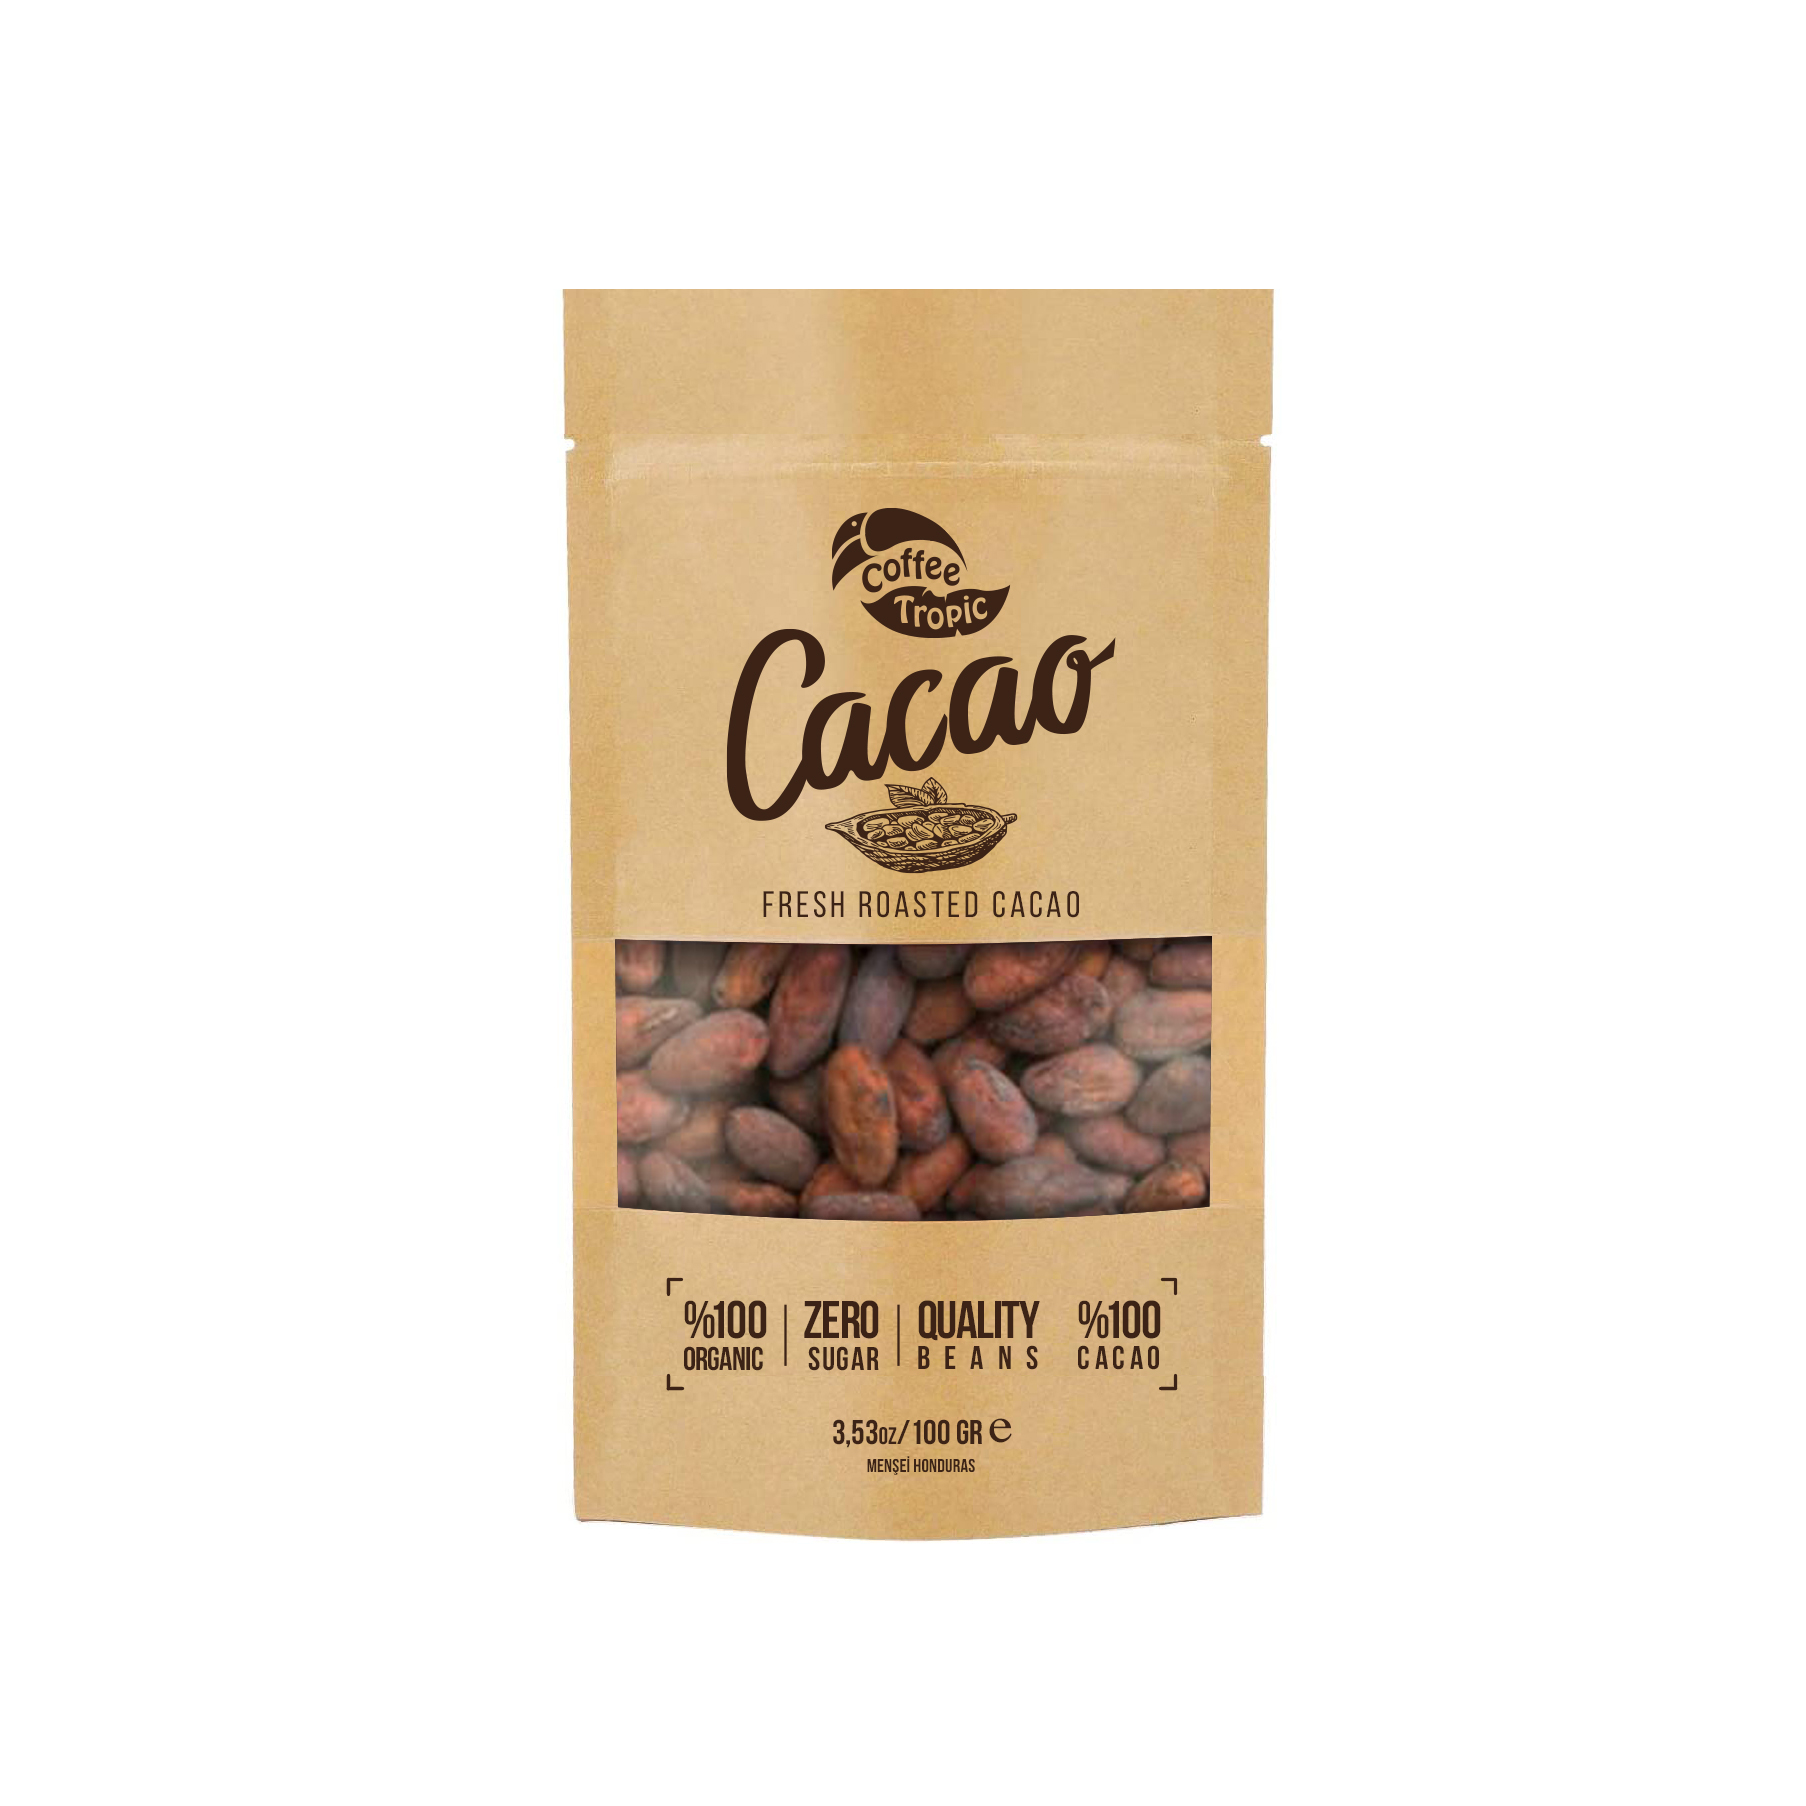 kalp sağlığı için çiğ kakao